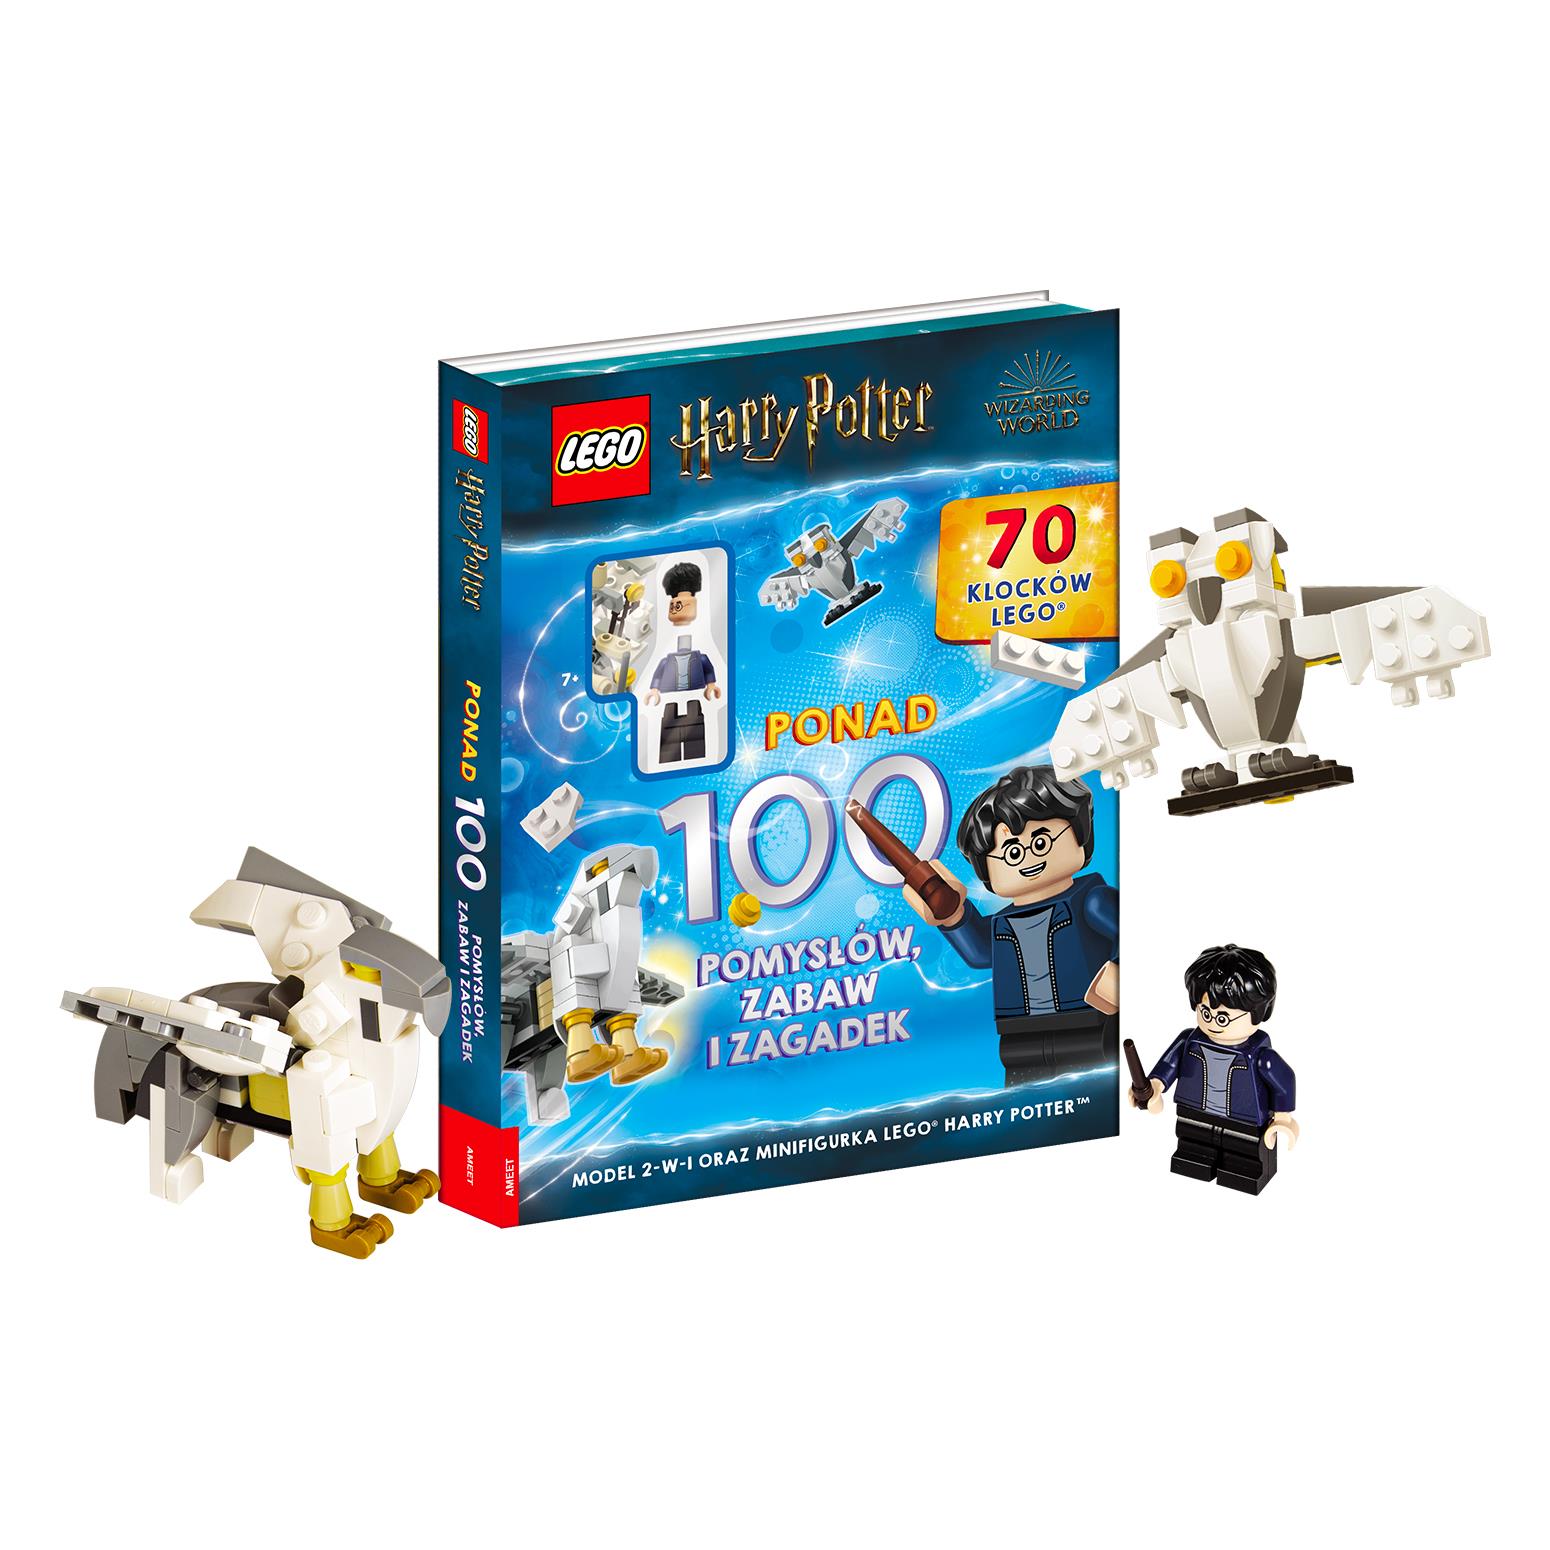 LEGO® HARRY POTTER™. Ponad 100 pomysłów, zabaw i zagadek